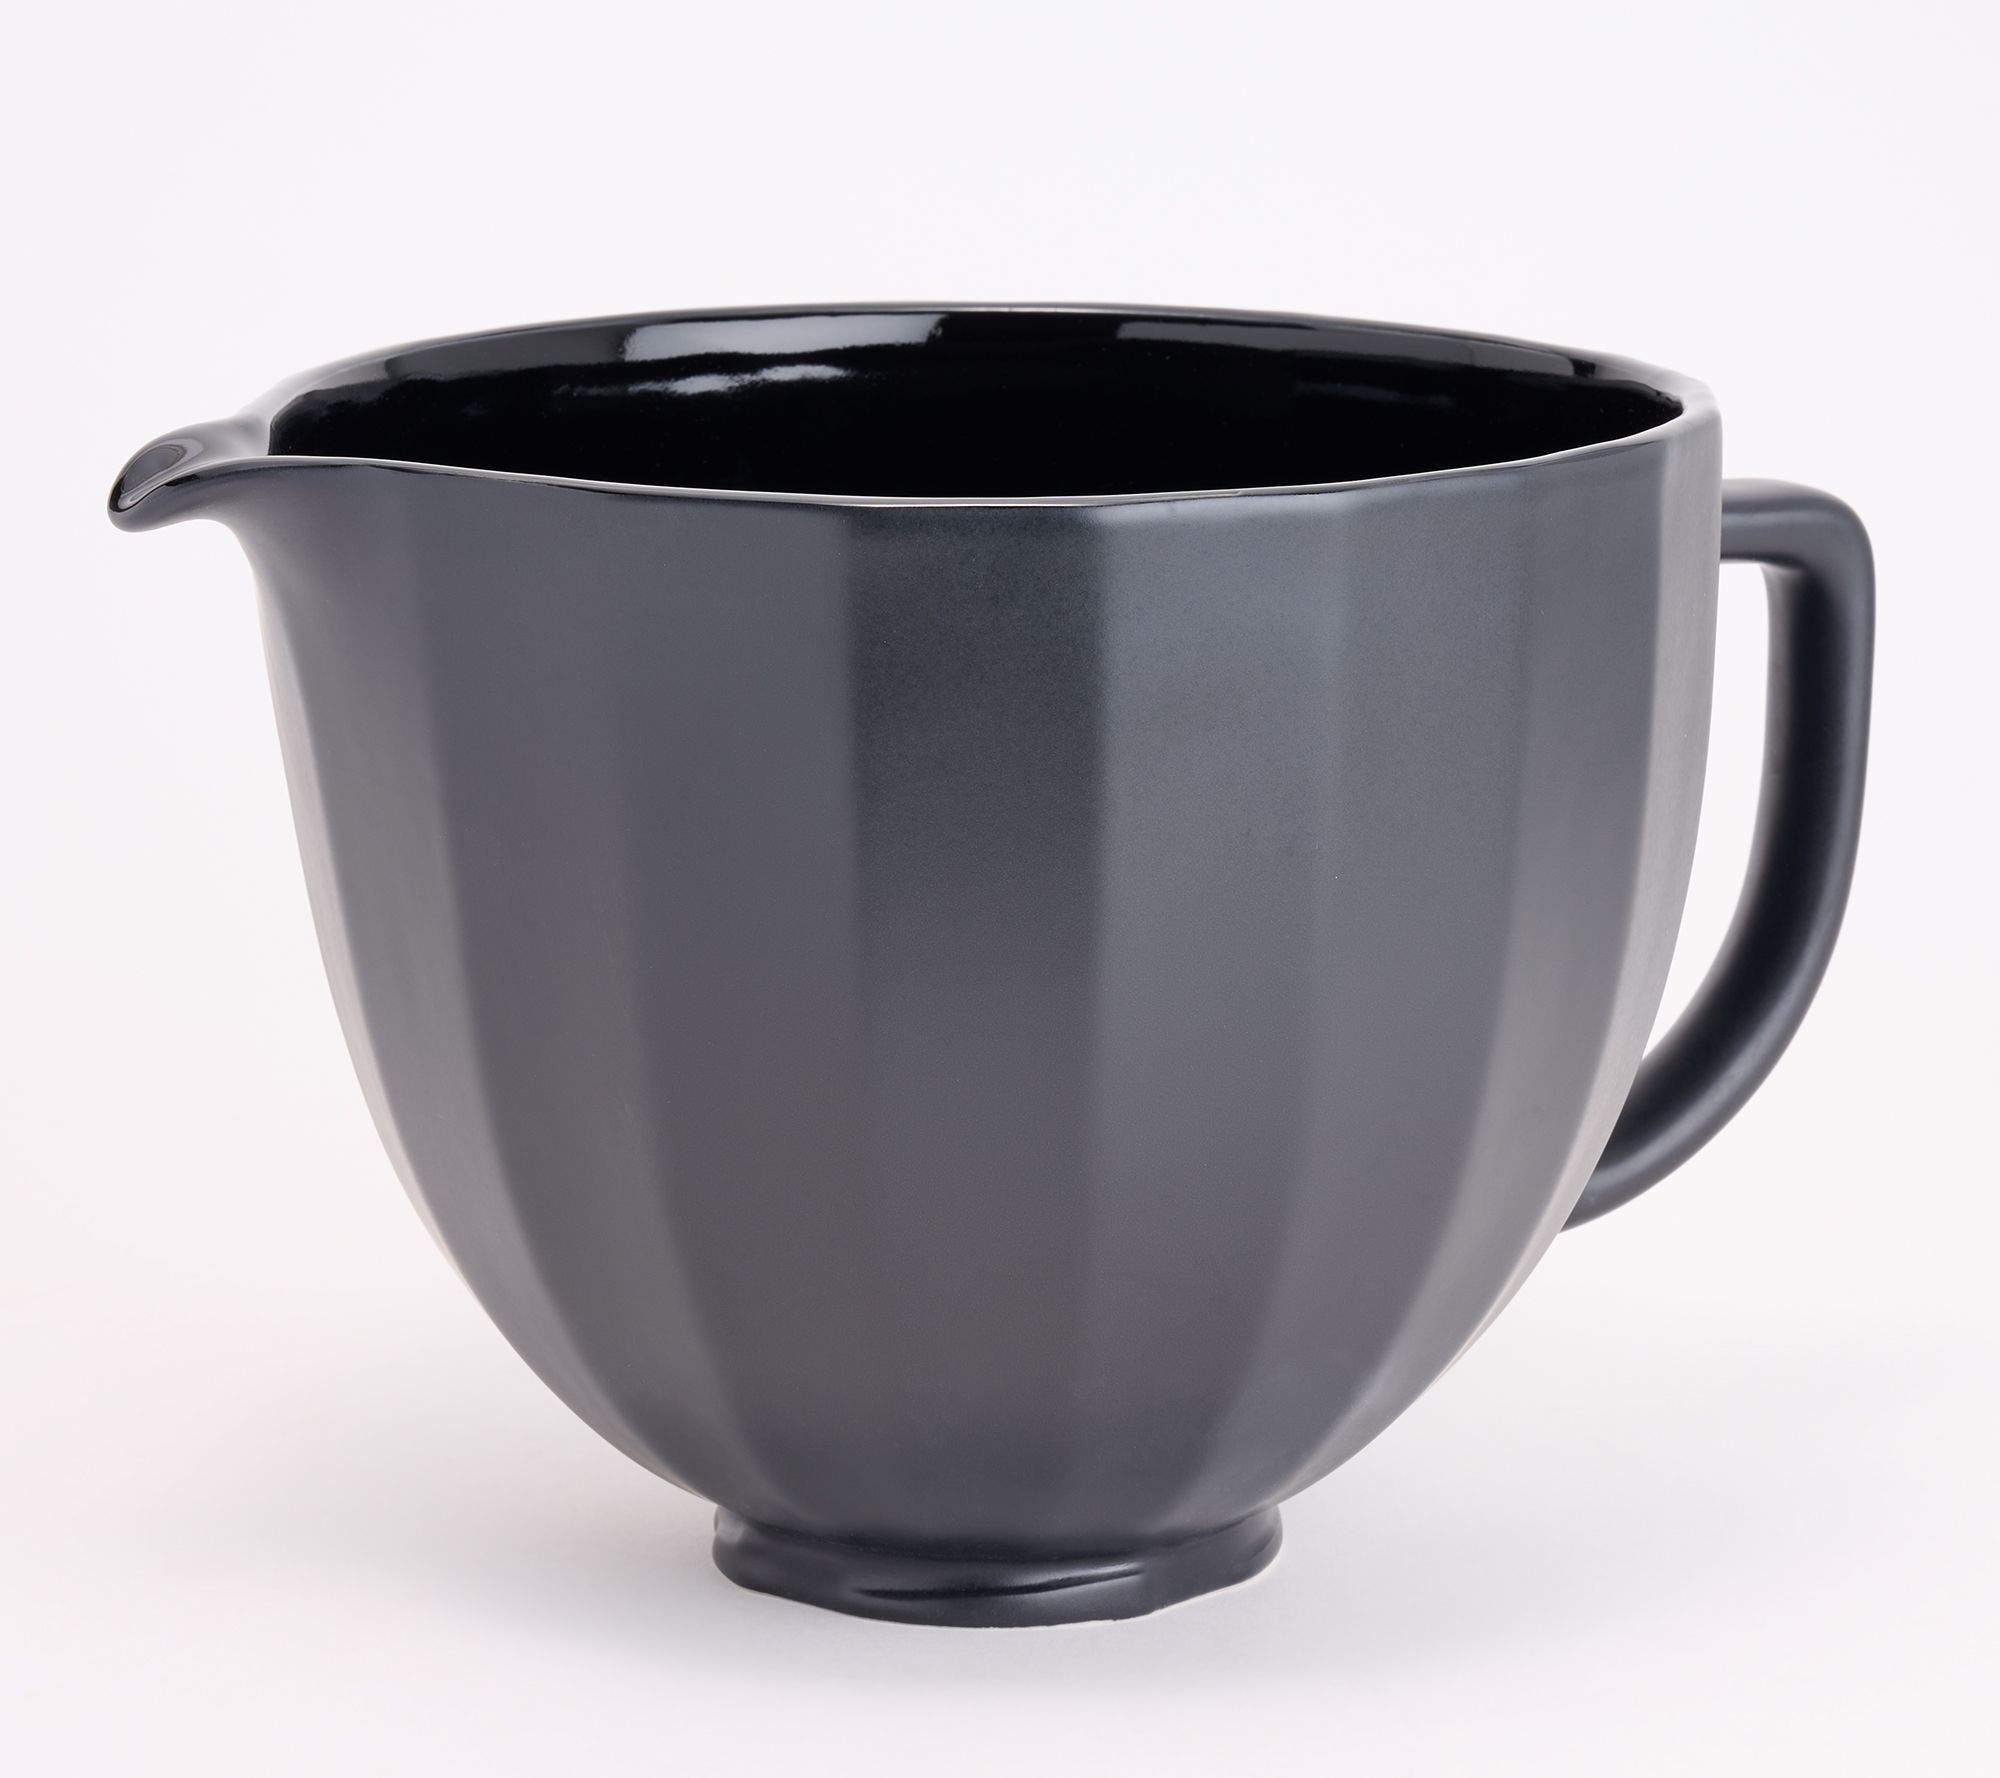 KitchenAid 5-Quart Stand Mixer Glass Bowl Pistachio